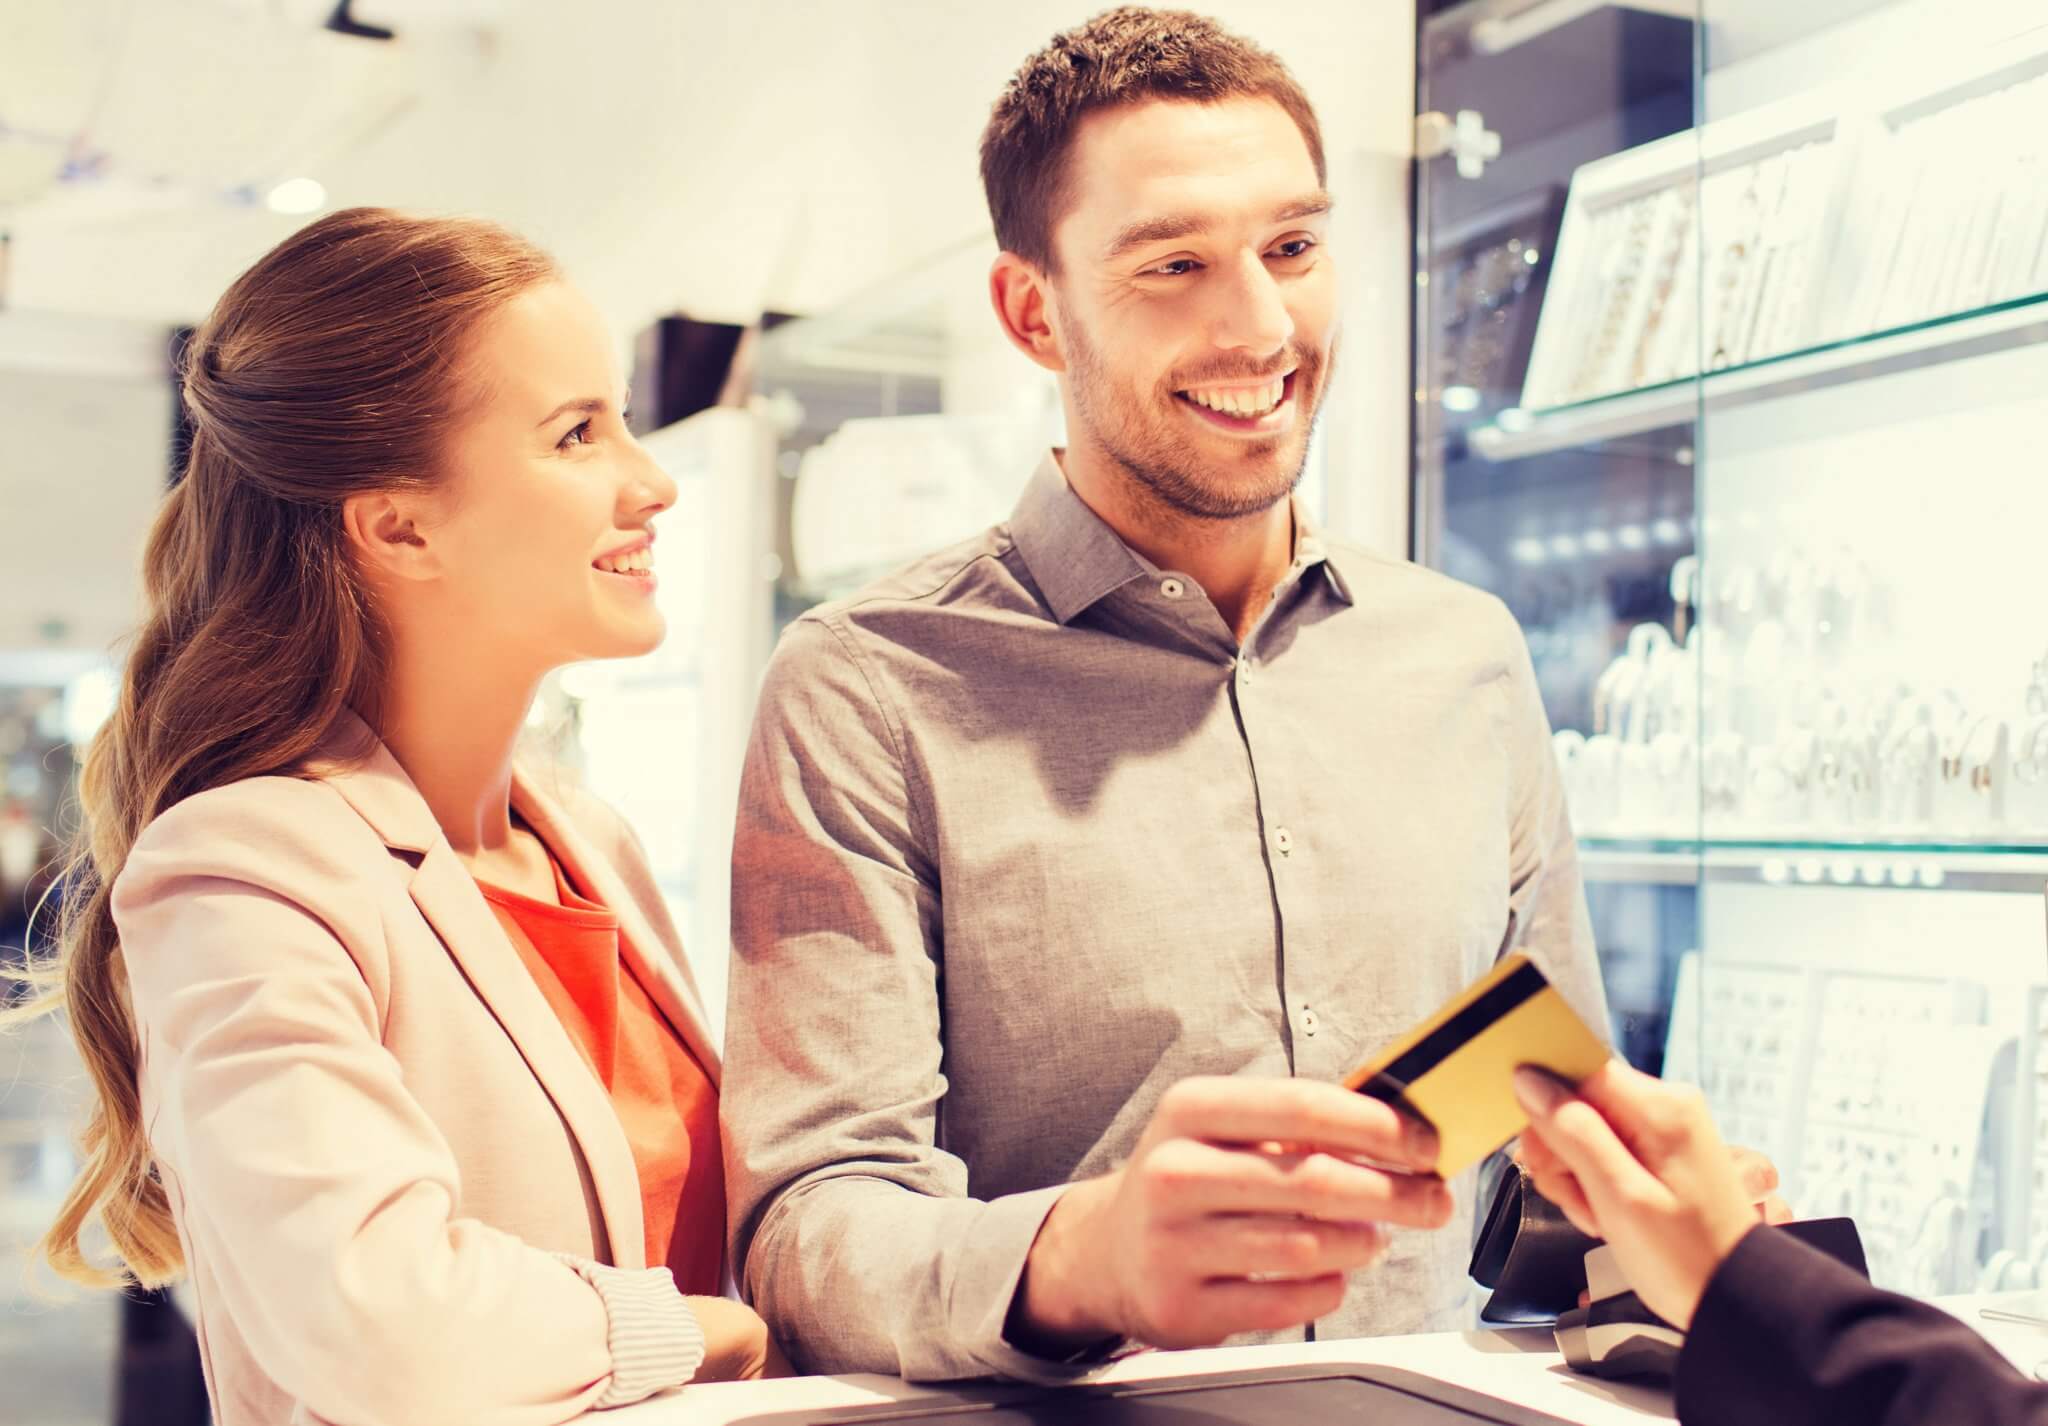 הלוואות בכרטיס אשראי ללא תפיסת מסגרת